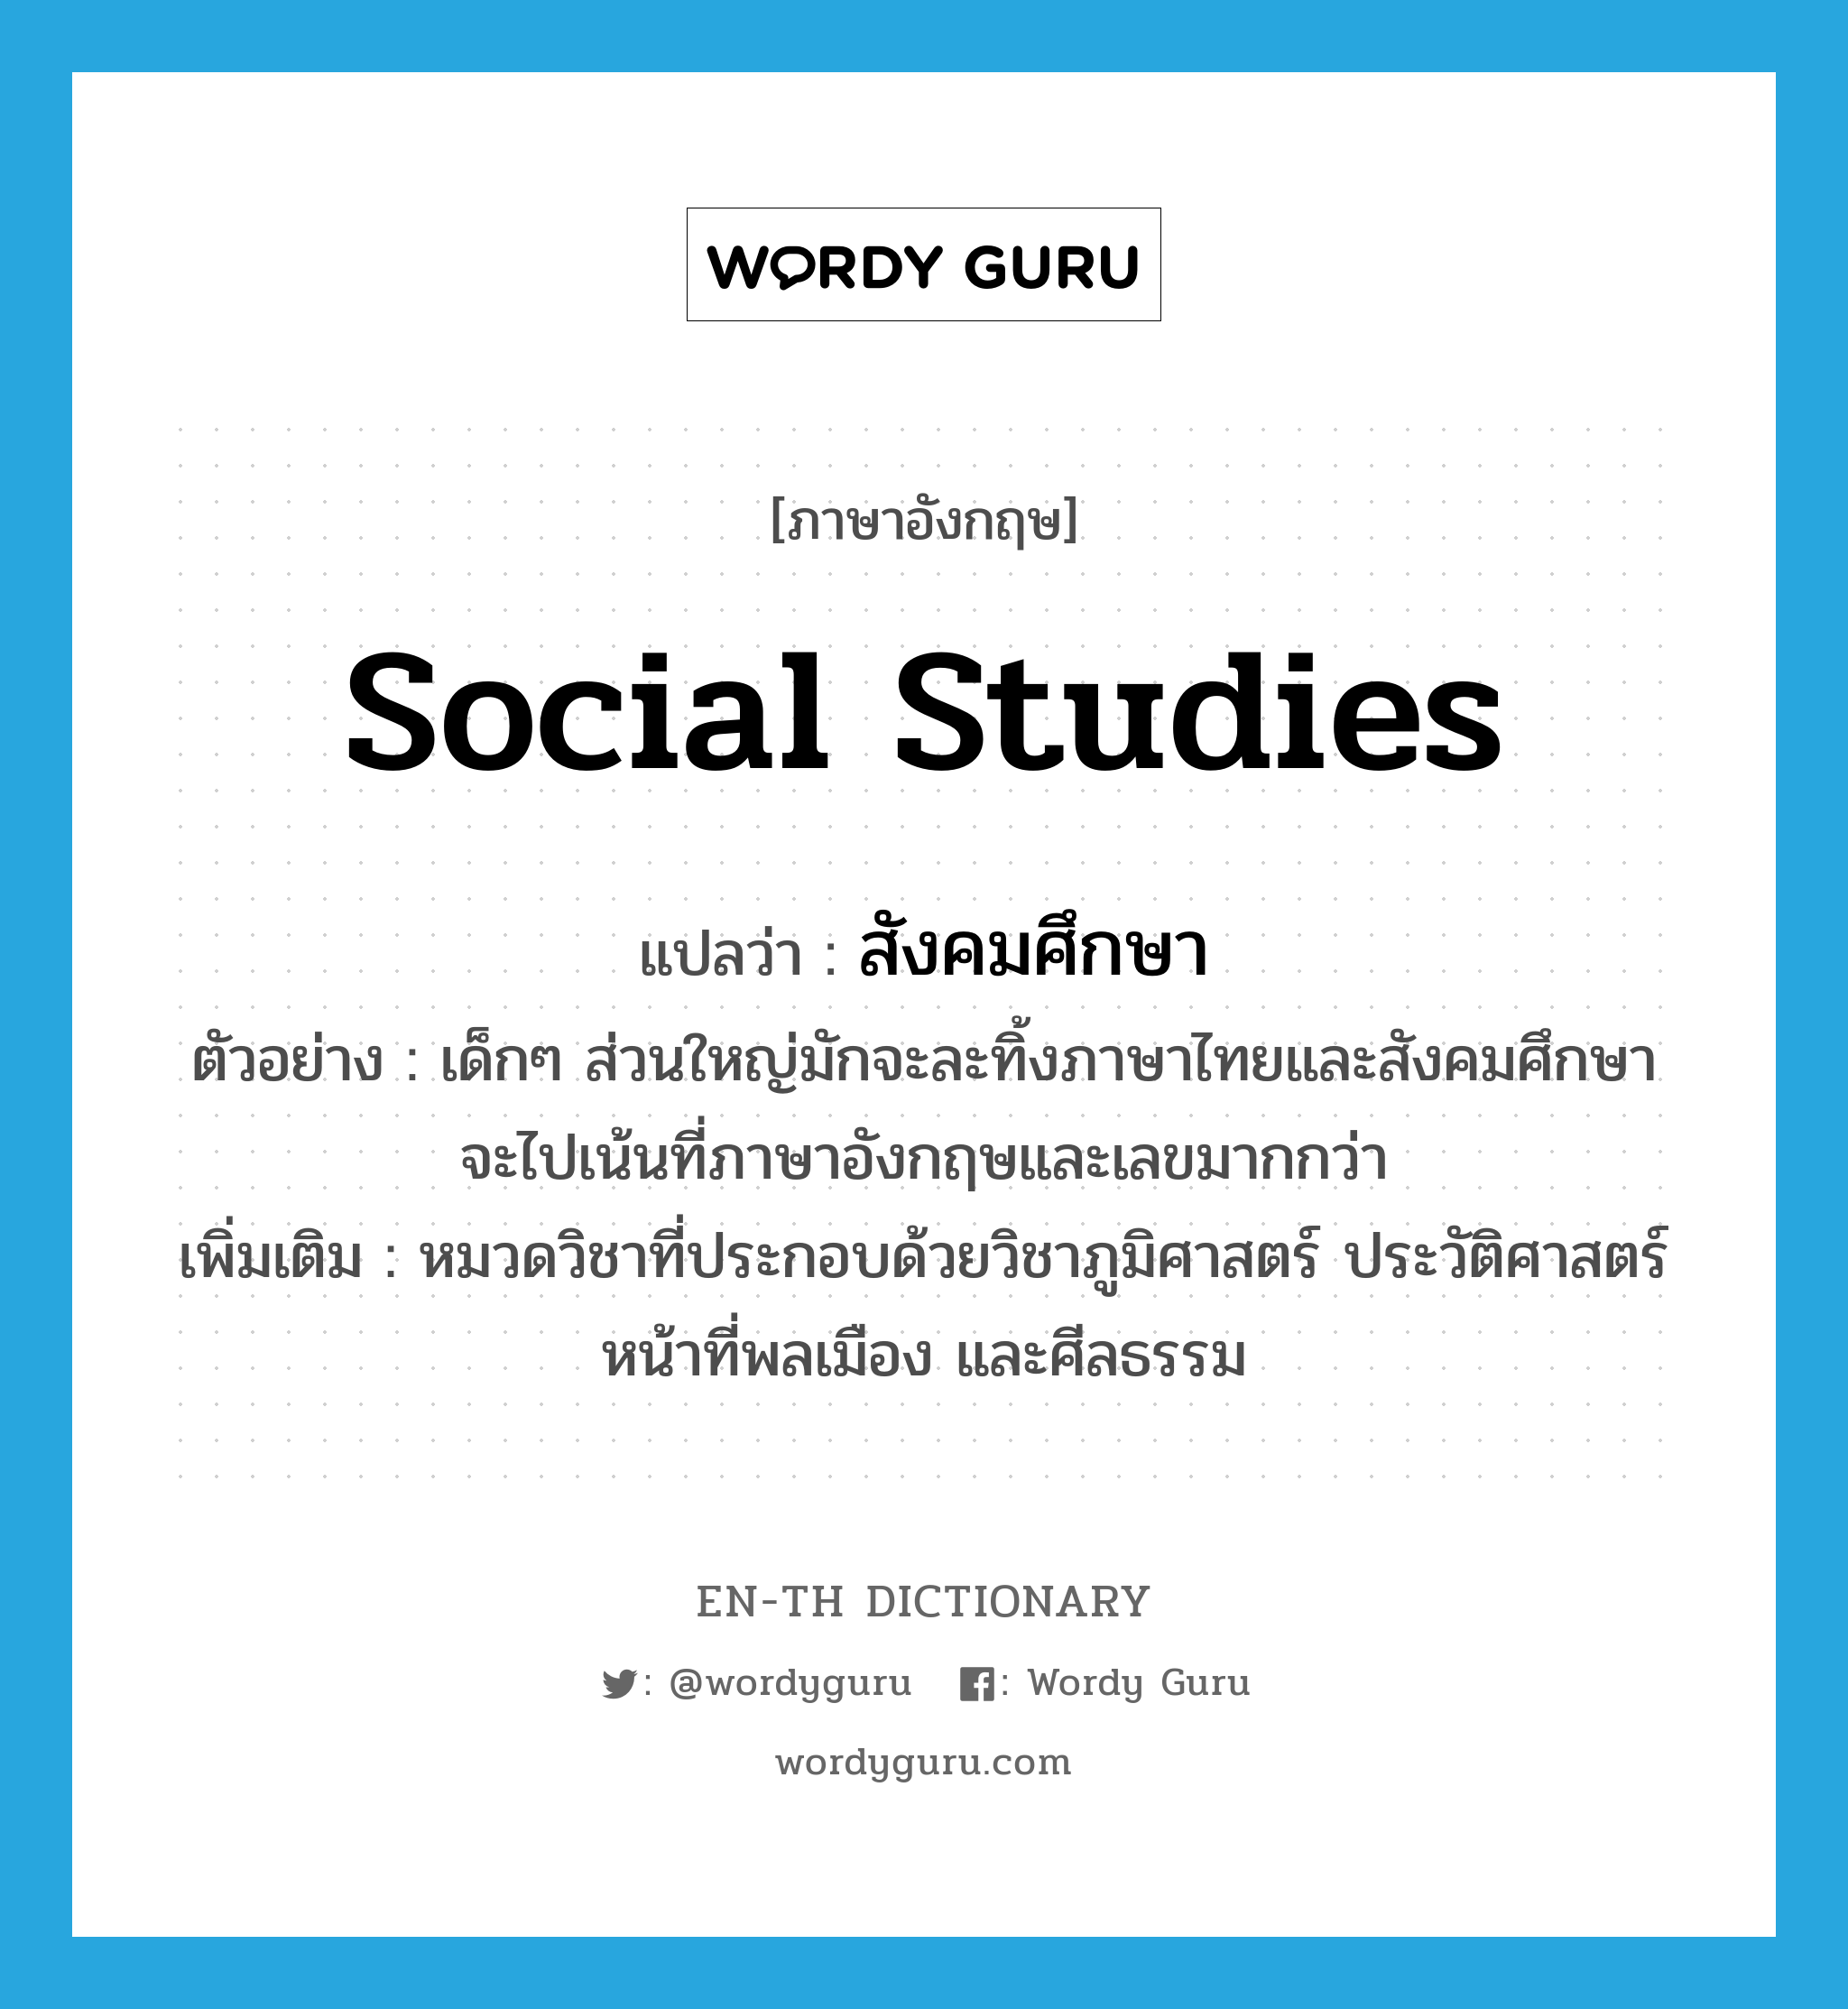 social studies แปลว่า?, คำศัพท์ภาษาอังกฤษ social studies แปลว่า สังคมศึกษา ประเภท N ตัวอย่าง เด็กๆ ส่วนใหญ่มักจะละทิ้งภาษาไทยและสังคมศึกษา จะไปเน้นที่ภาษาอังกฤษและเลขมากกว่า เพิ่มเติม หมวดวิชาที่ประกอบด้วยวิชาภูมิศาสตร์ ประวัติศาสตร์ หน้าที่พลเมือง และศีลธรรม หมวด N